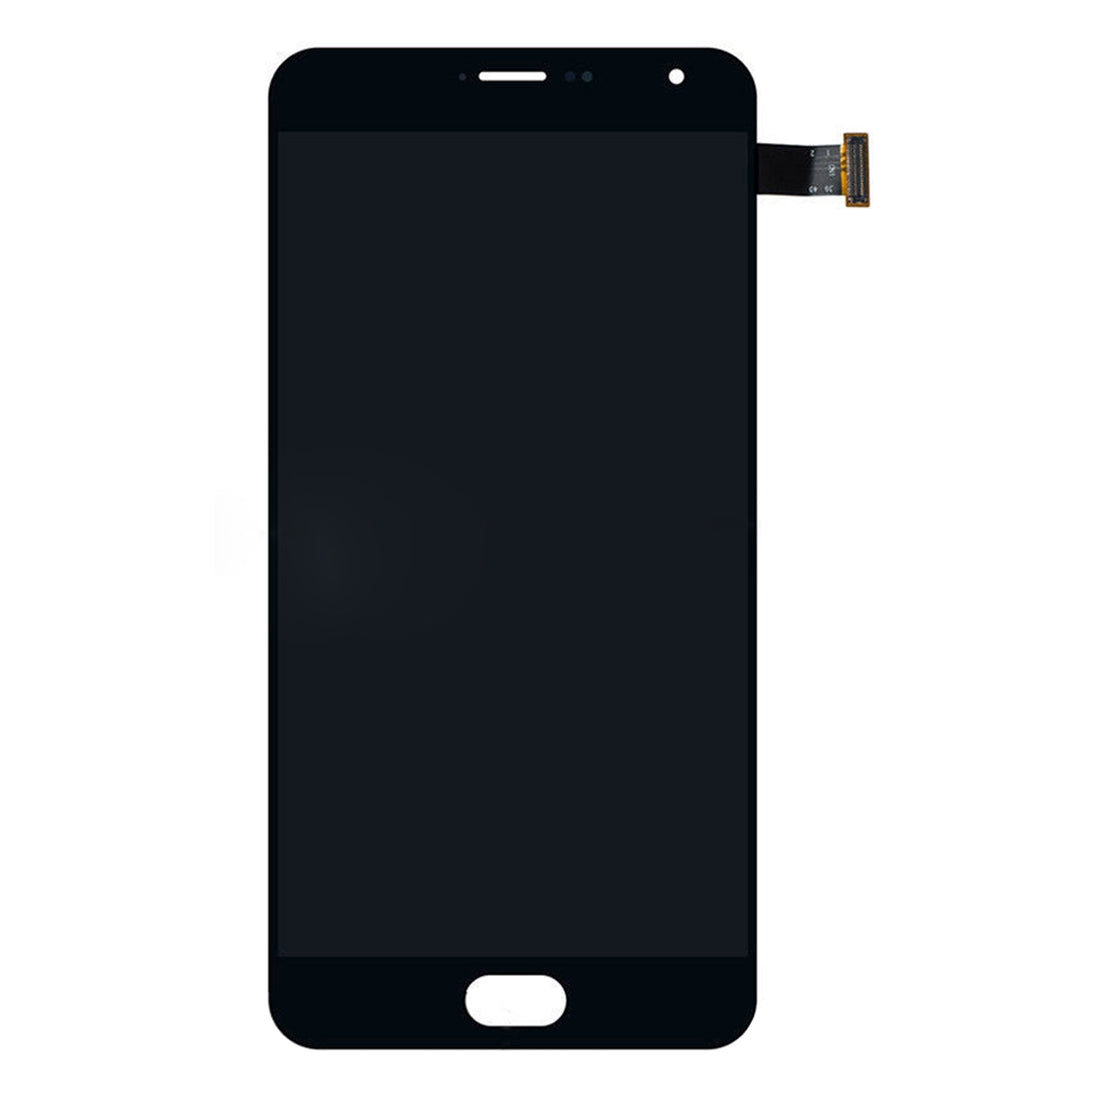 Pantalla LCD + Tactil Digitalizador Meizu Pro 5 Negro